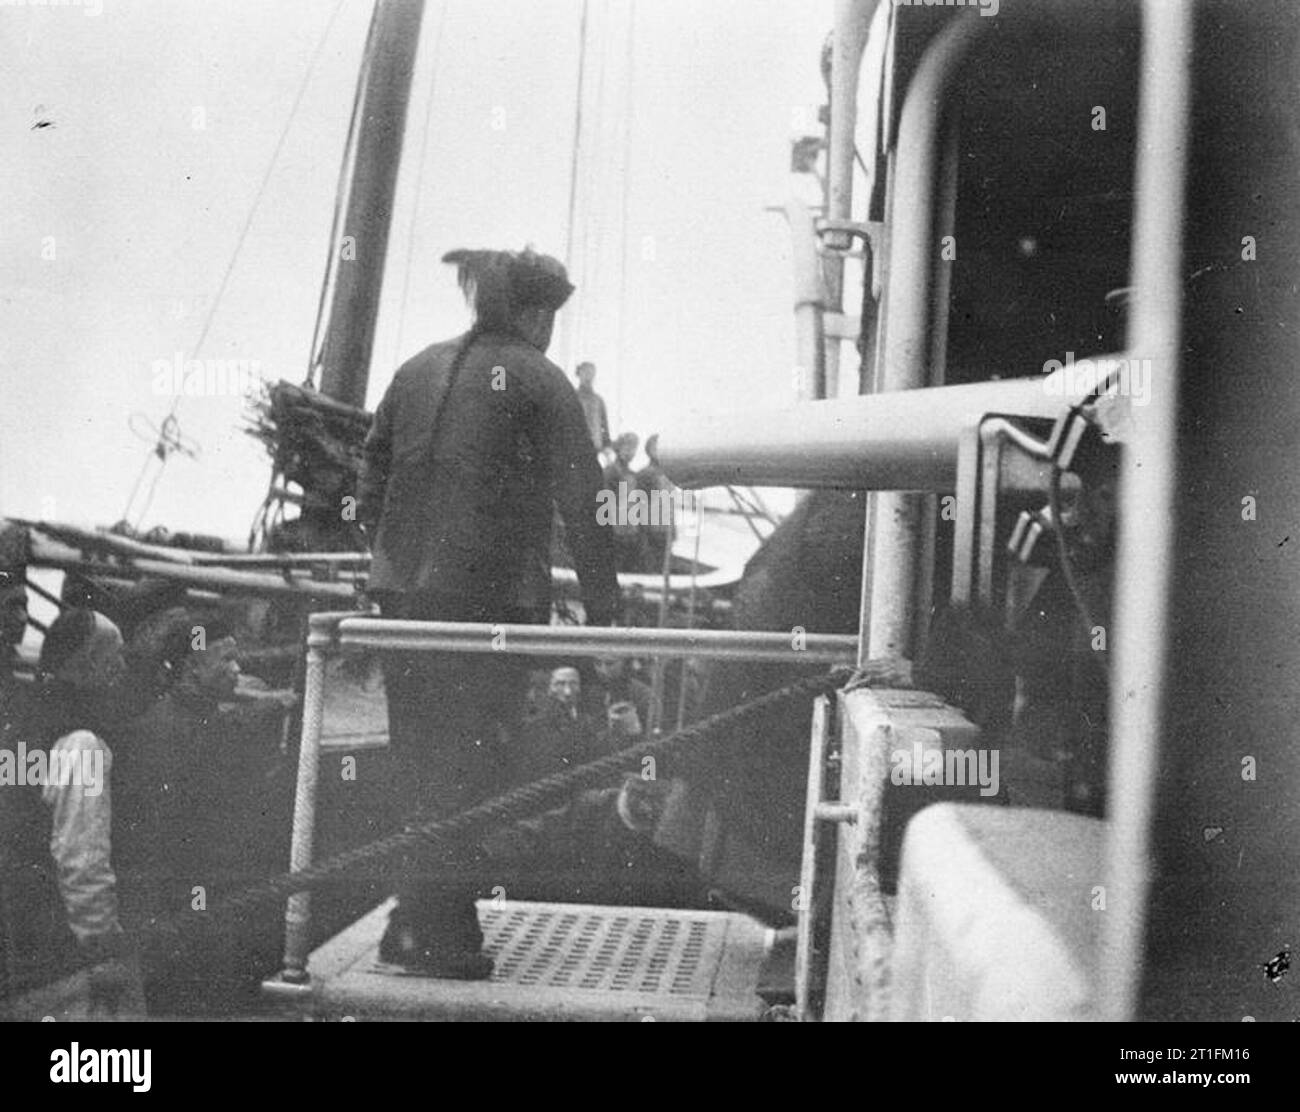 Le HMS Thistle, 1ère classe à la canonnière China Station 1910 - 1912 Le gouverneur de Hunan arrivant à bord du HMS THISTLE d'appeler le consul et le capitaine après les affaires émeute à Changsha en 1910. Tous les biens ont été pillés et brûlés avec des étrangers qui s'échappe de justesse avec leur vie. Banque D'Images